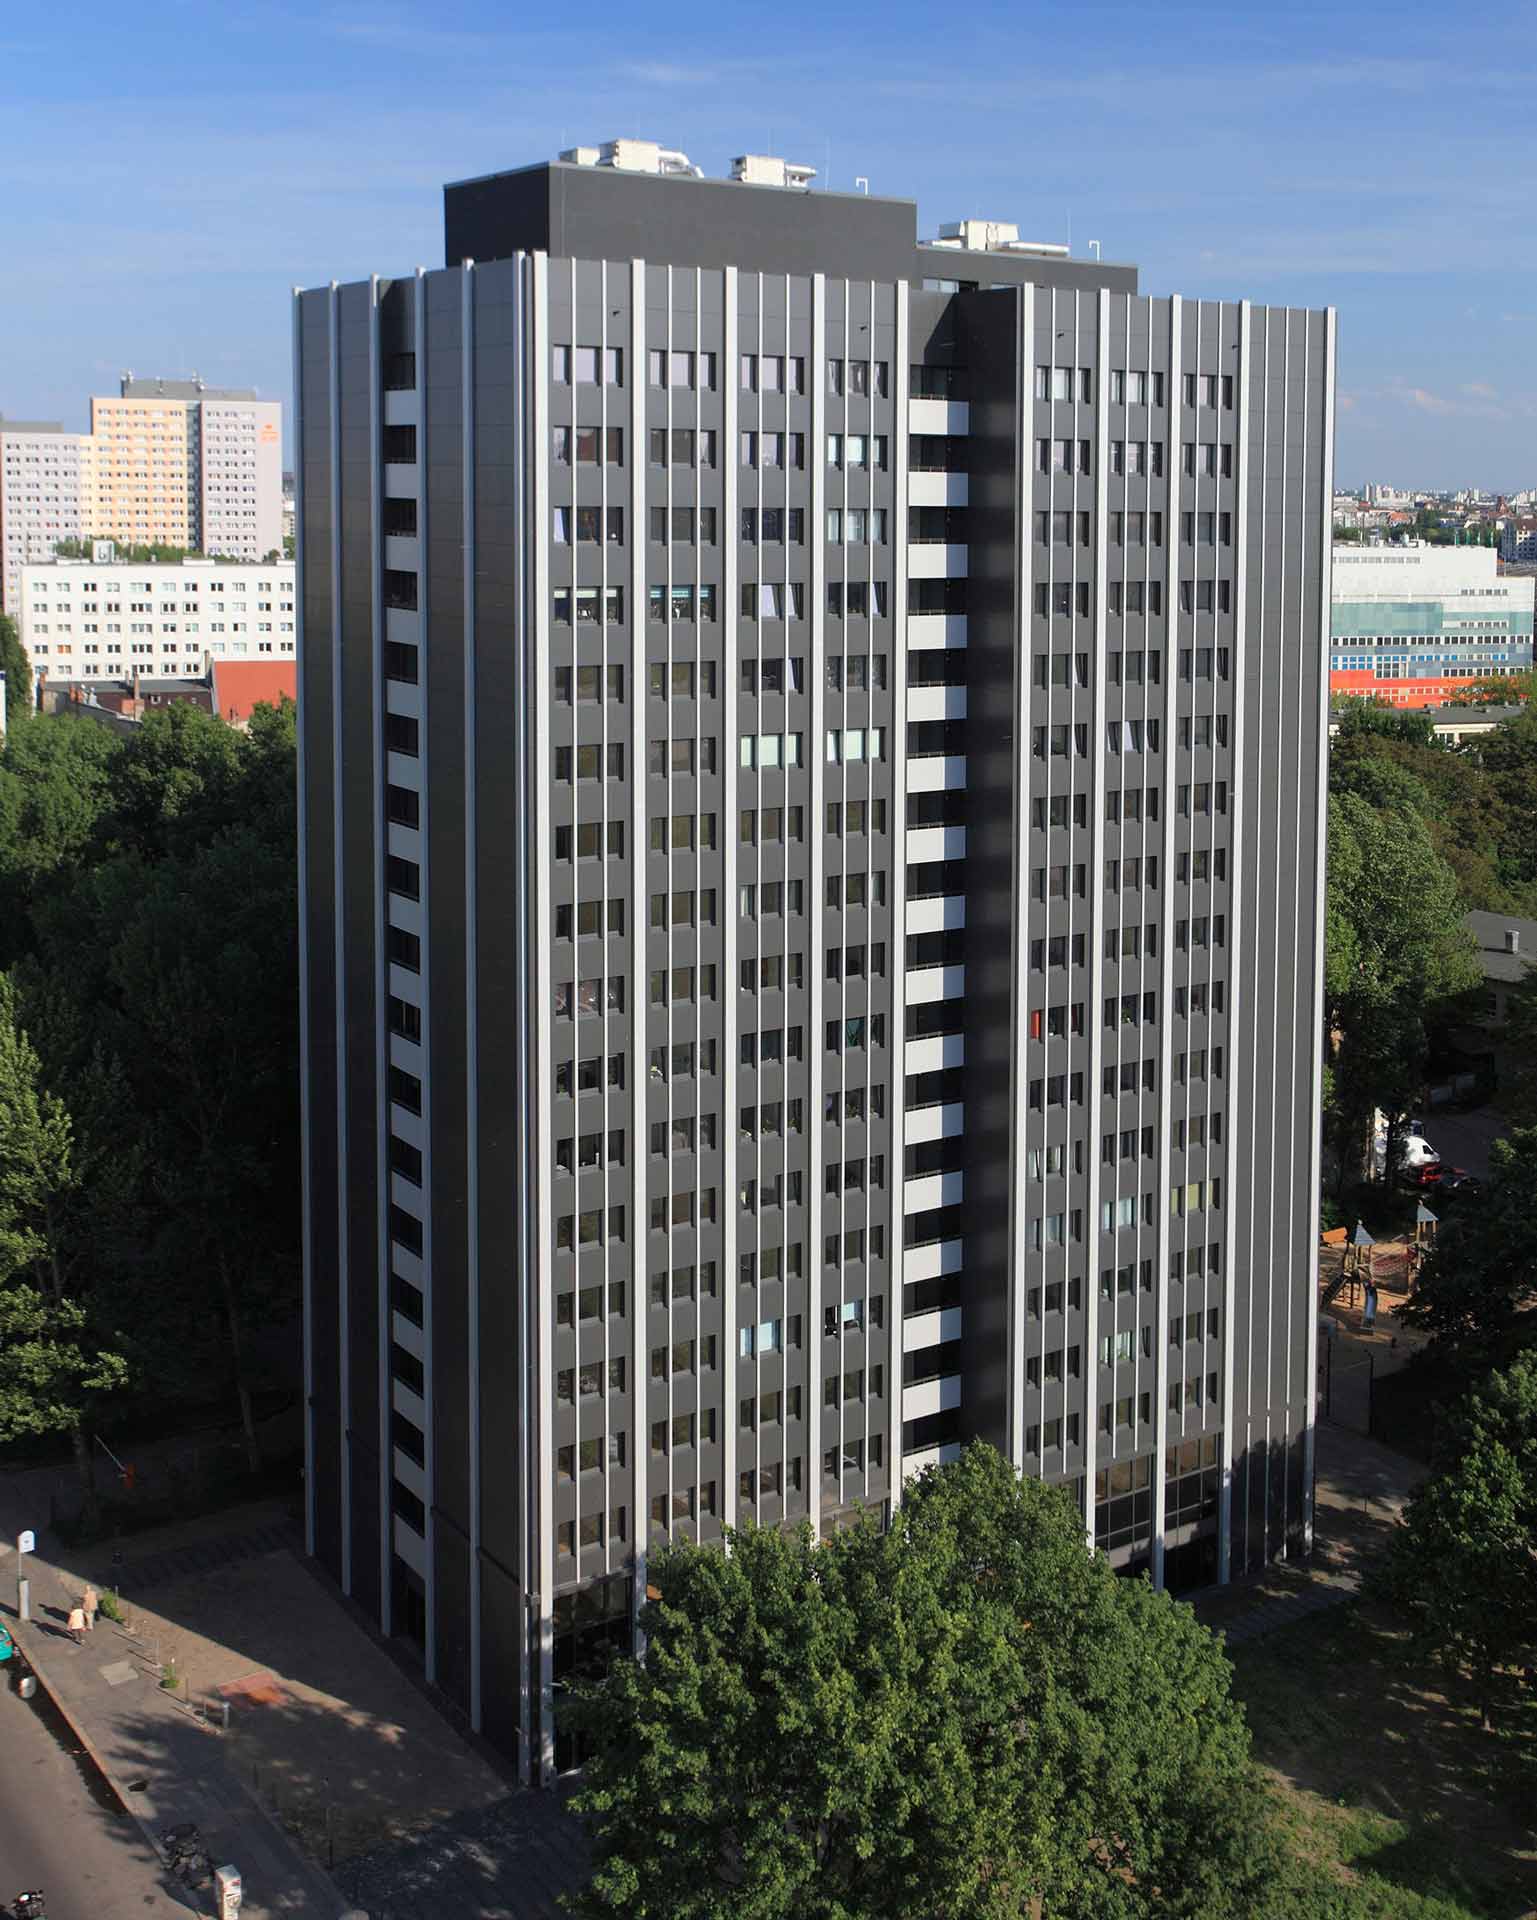 Wohnhochhaus, Berlin - nach der Fassadensanierung